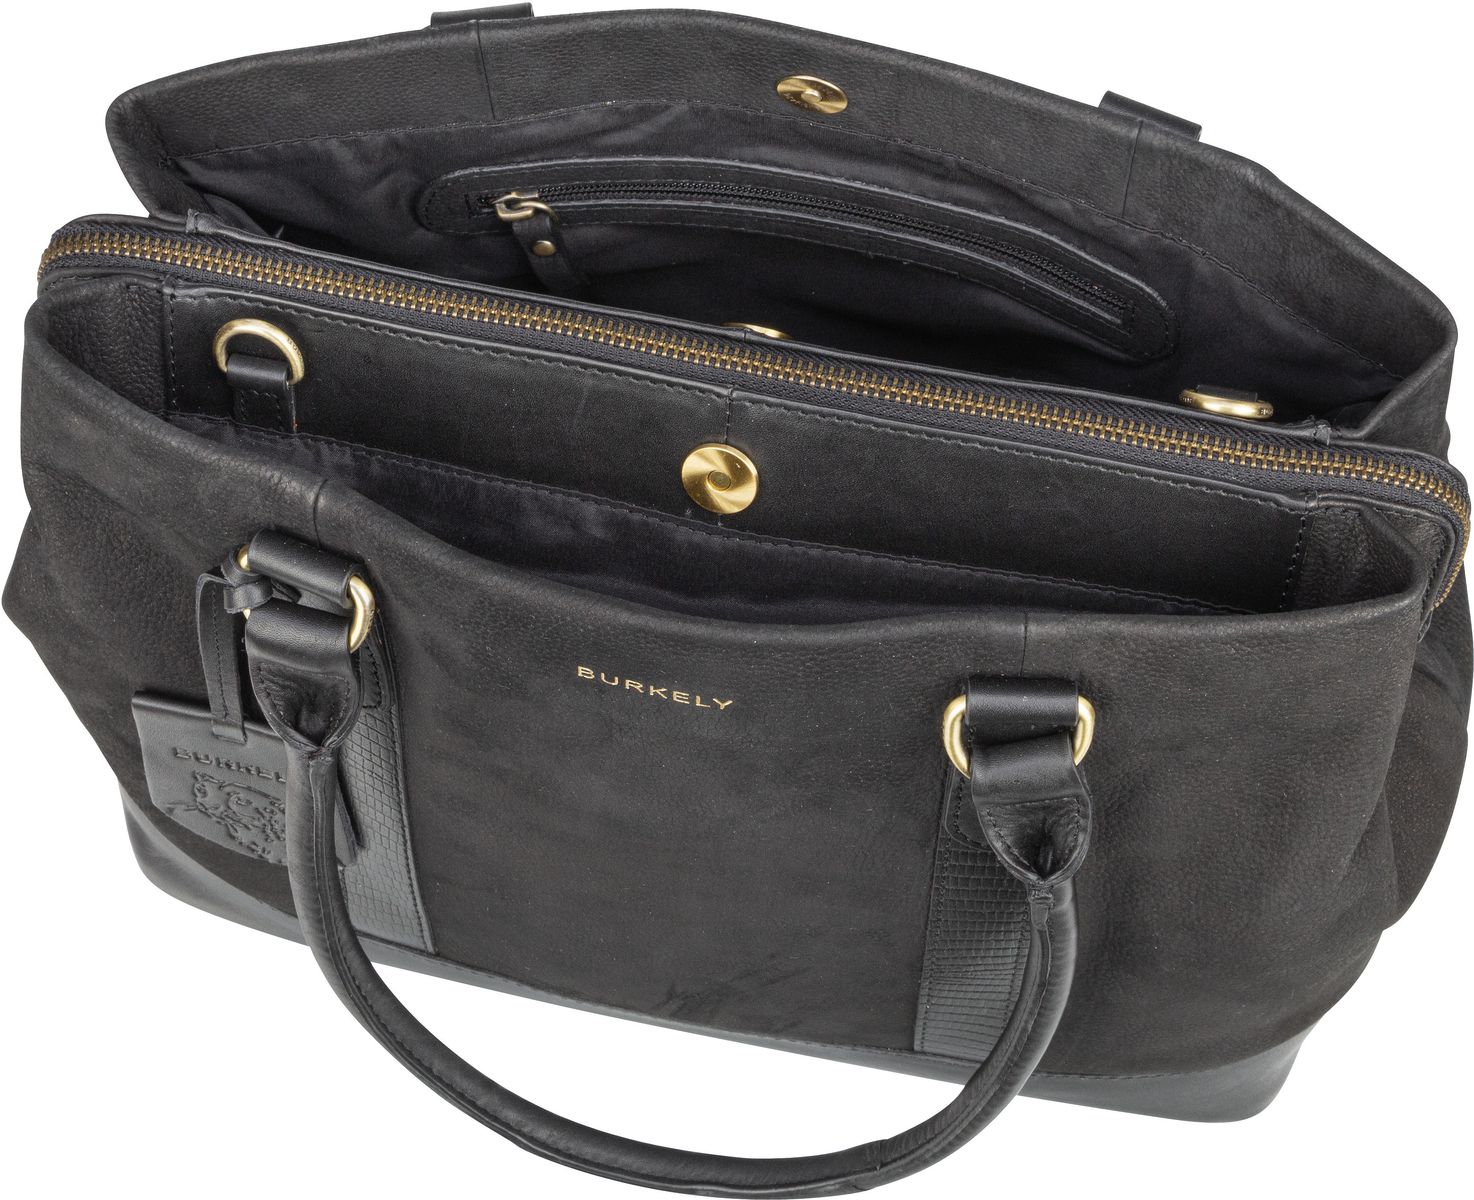 Burkely Soul Sam Handbag M 3969 - Black